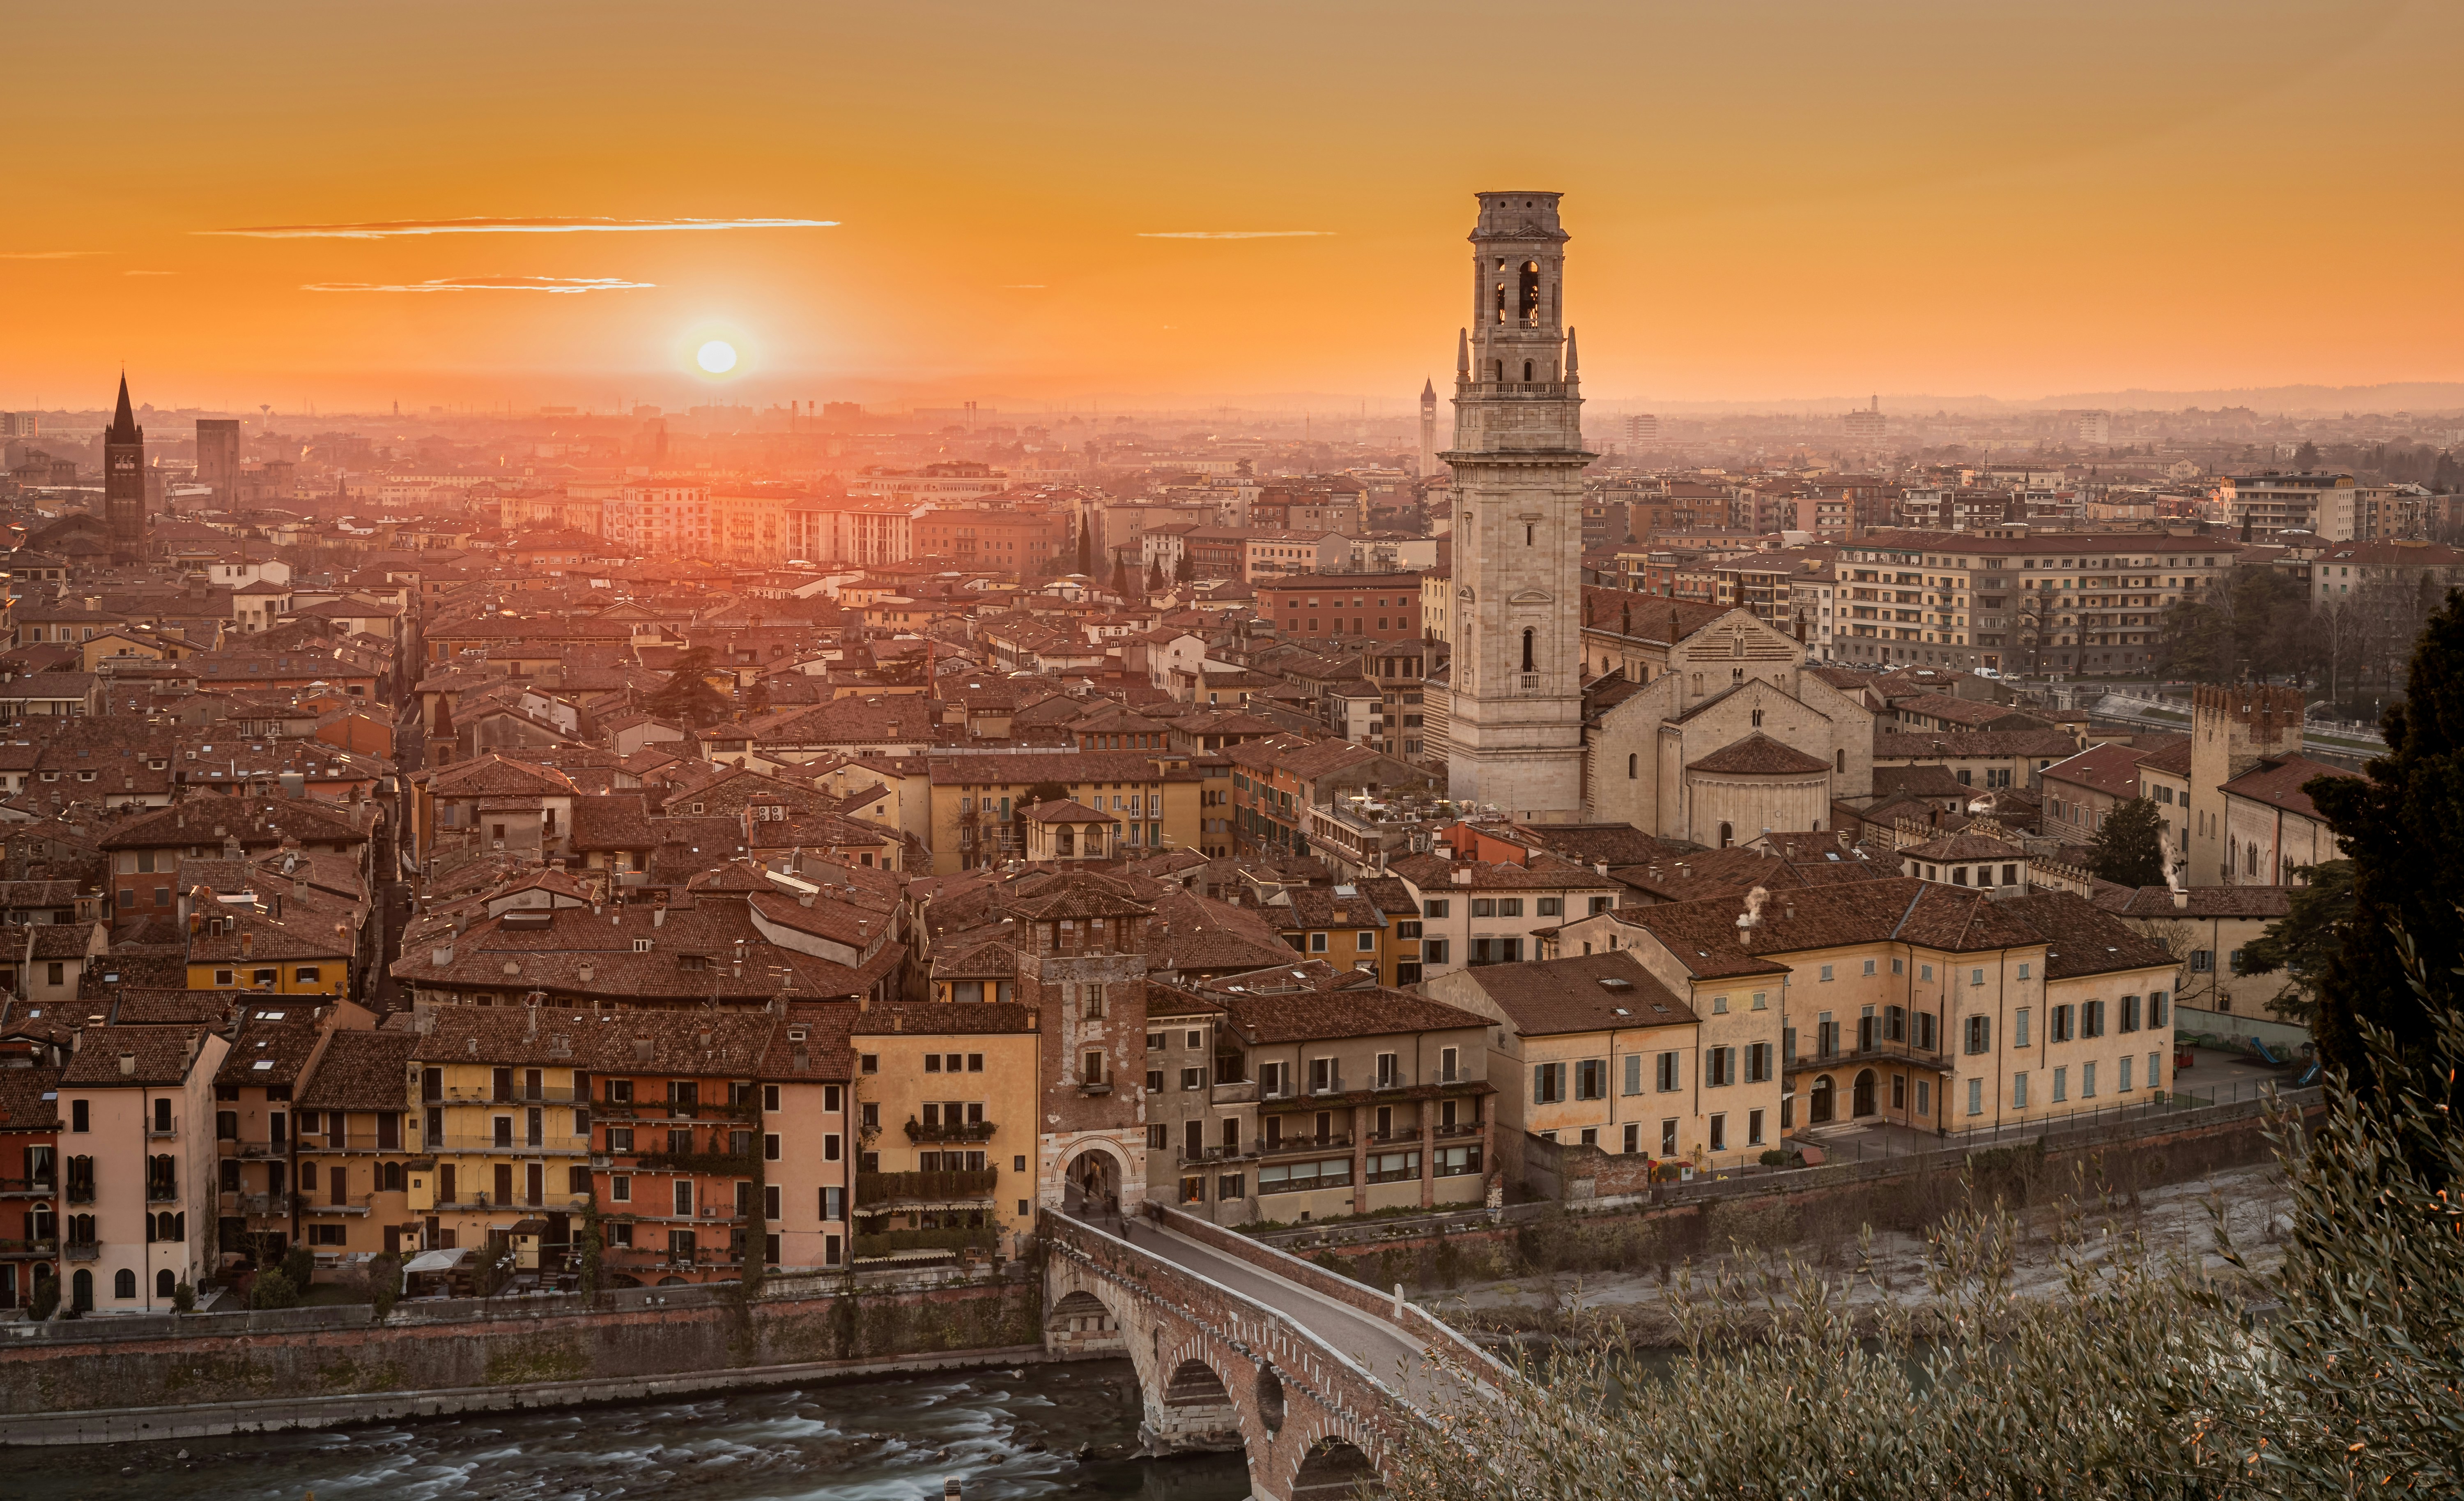 Visite guidate a Verona: una guida completa